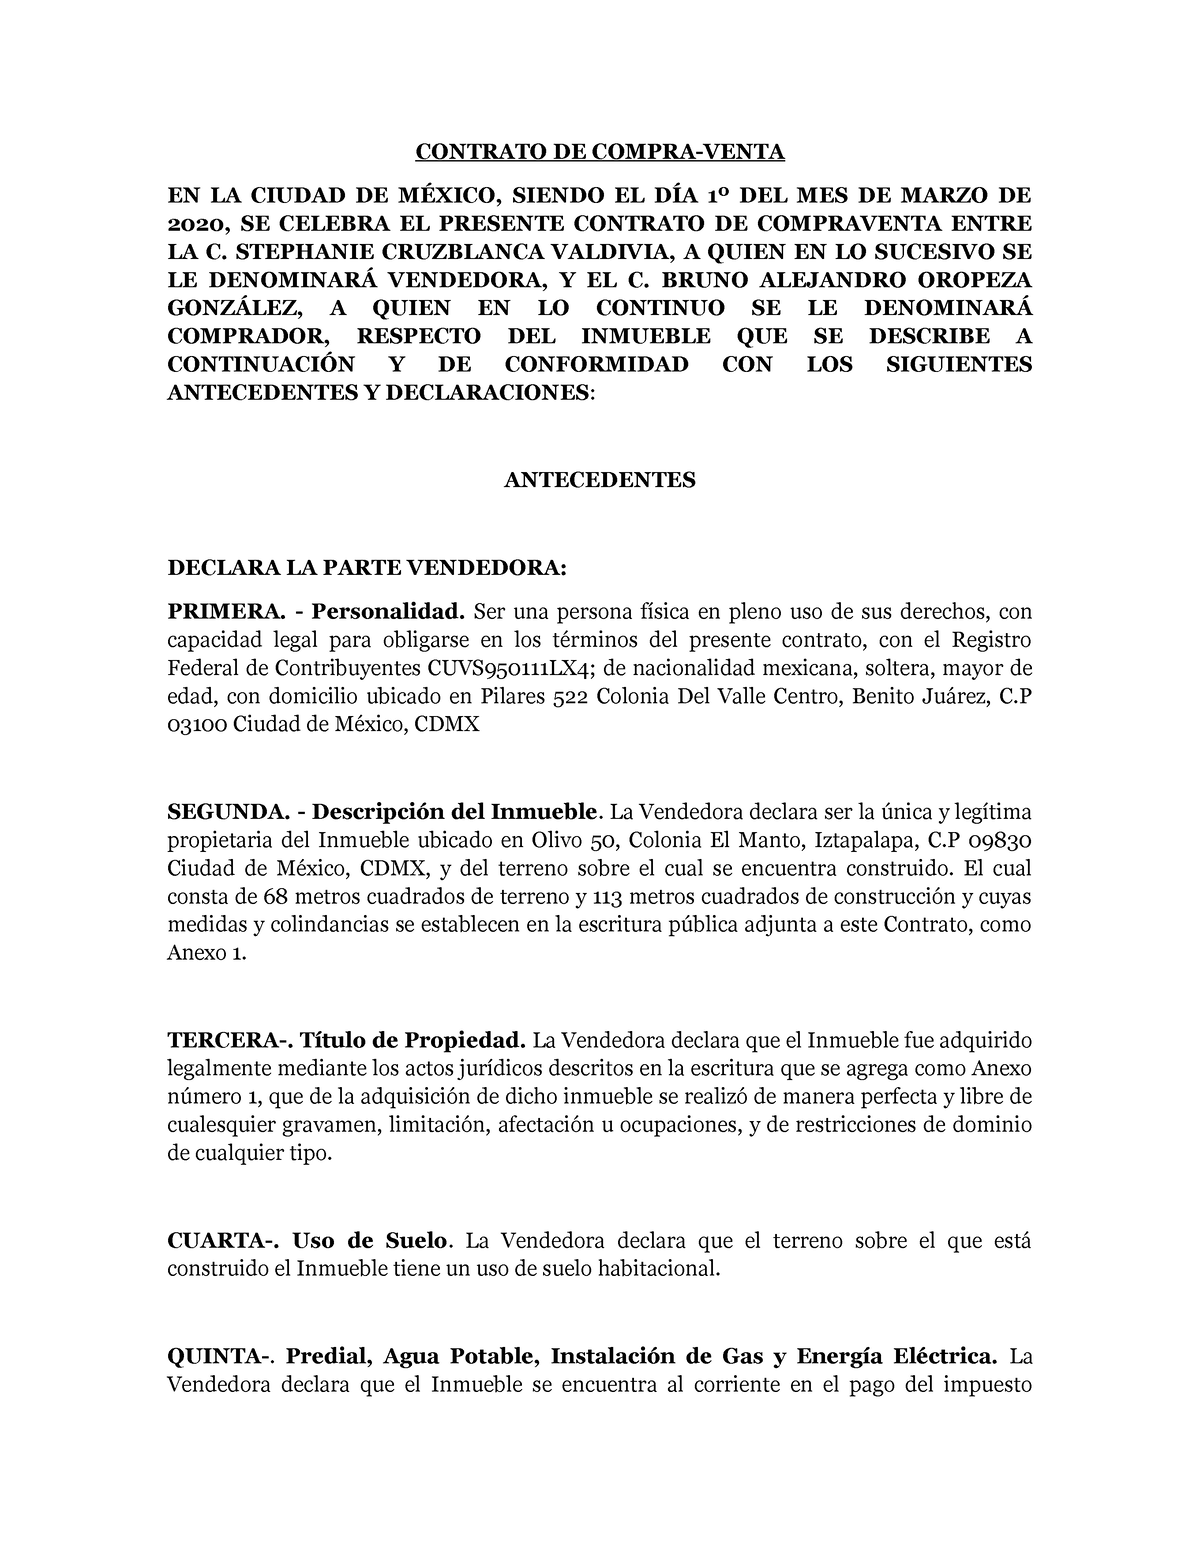 Contrato De Compraventa Ejemplo Contrato De Compra Venta En La Ciudad De MÉxico Siendo El DÍa 6215